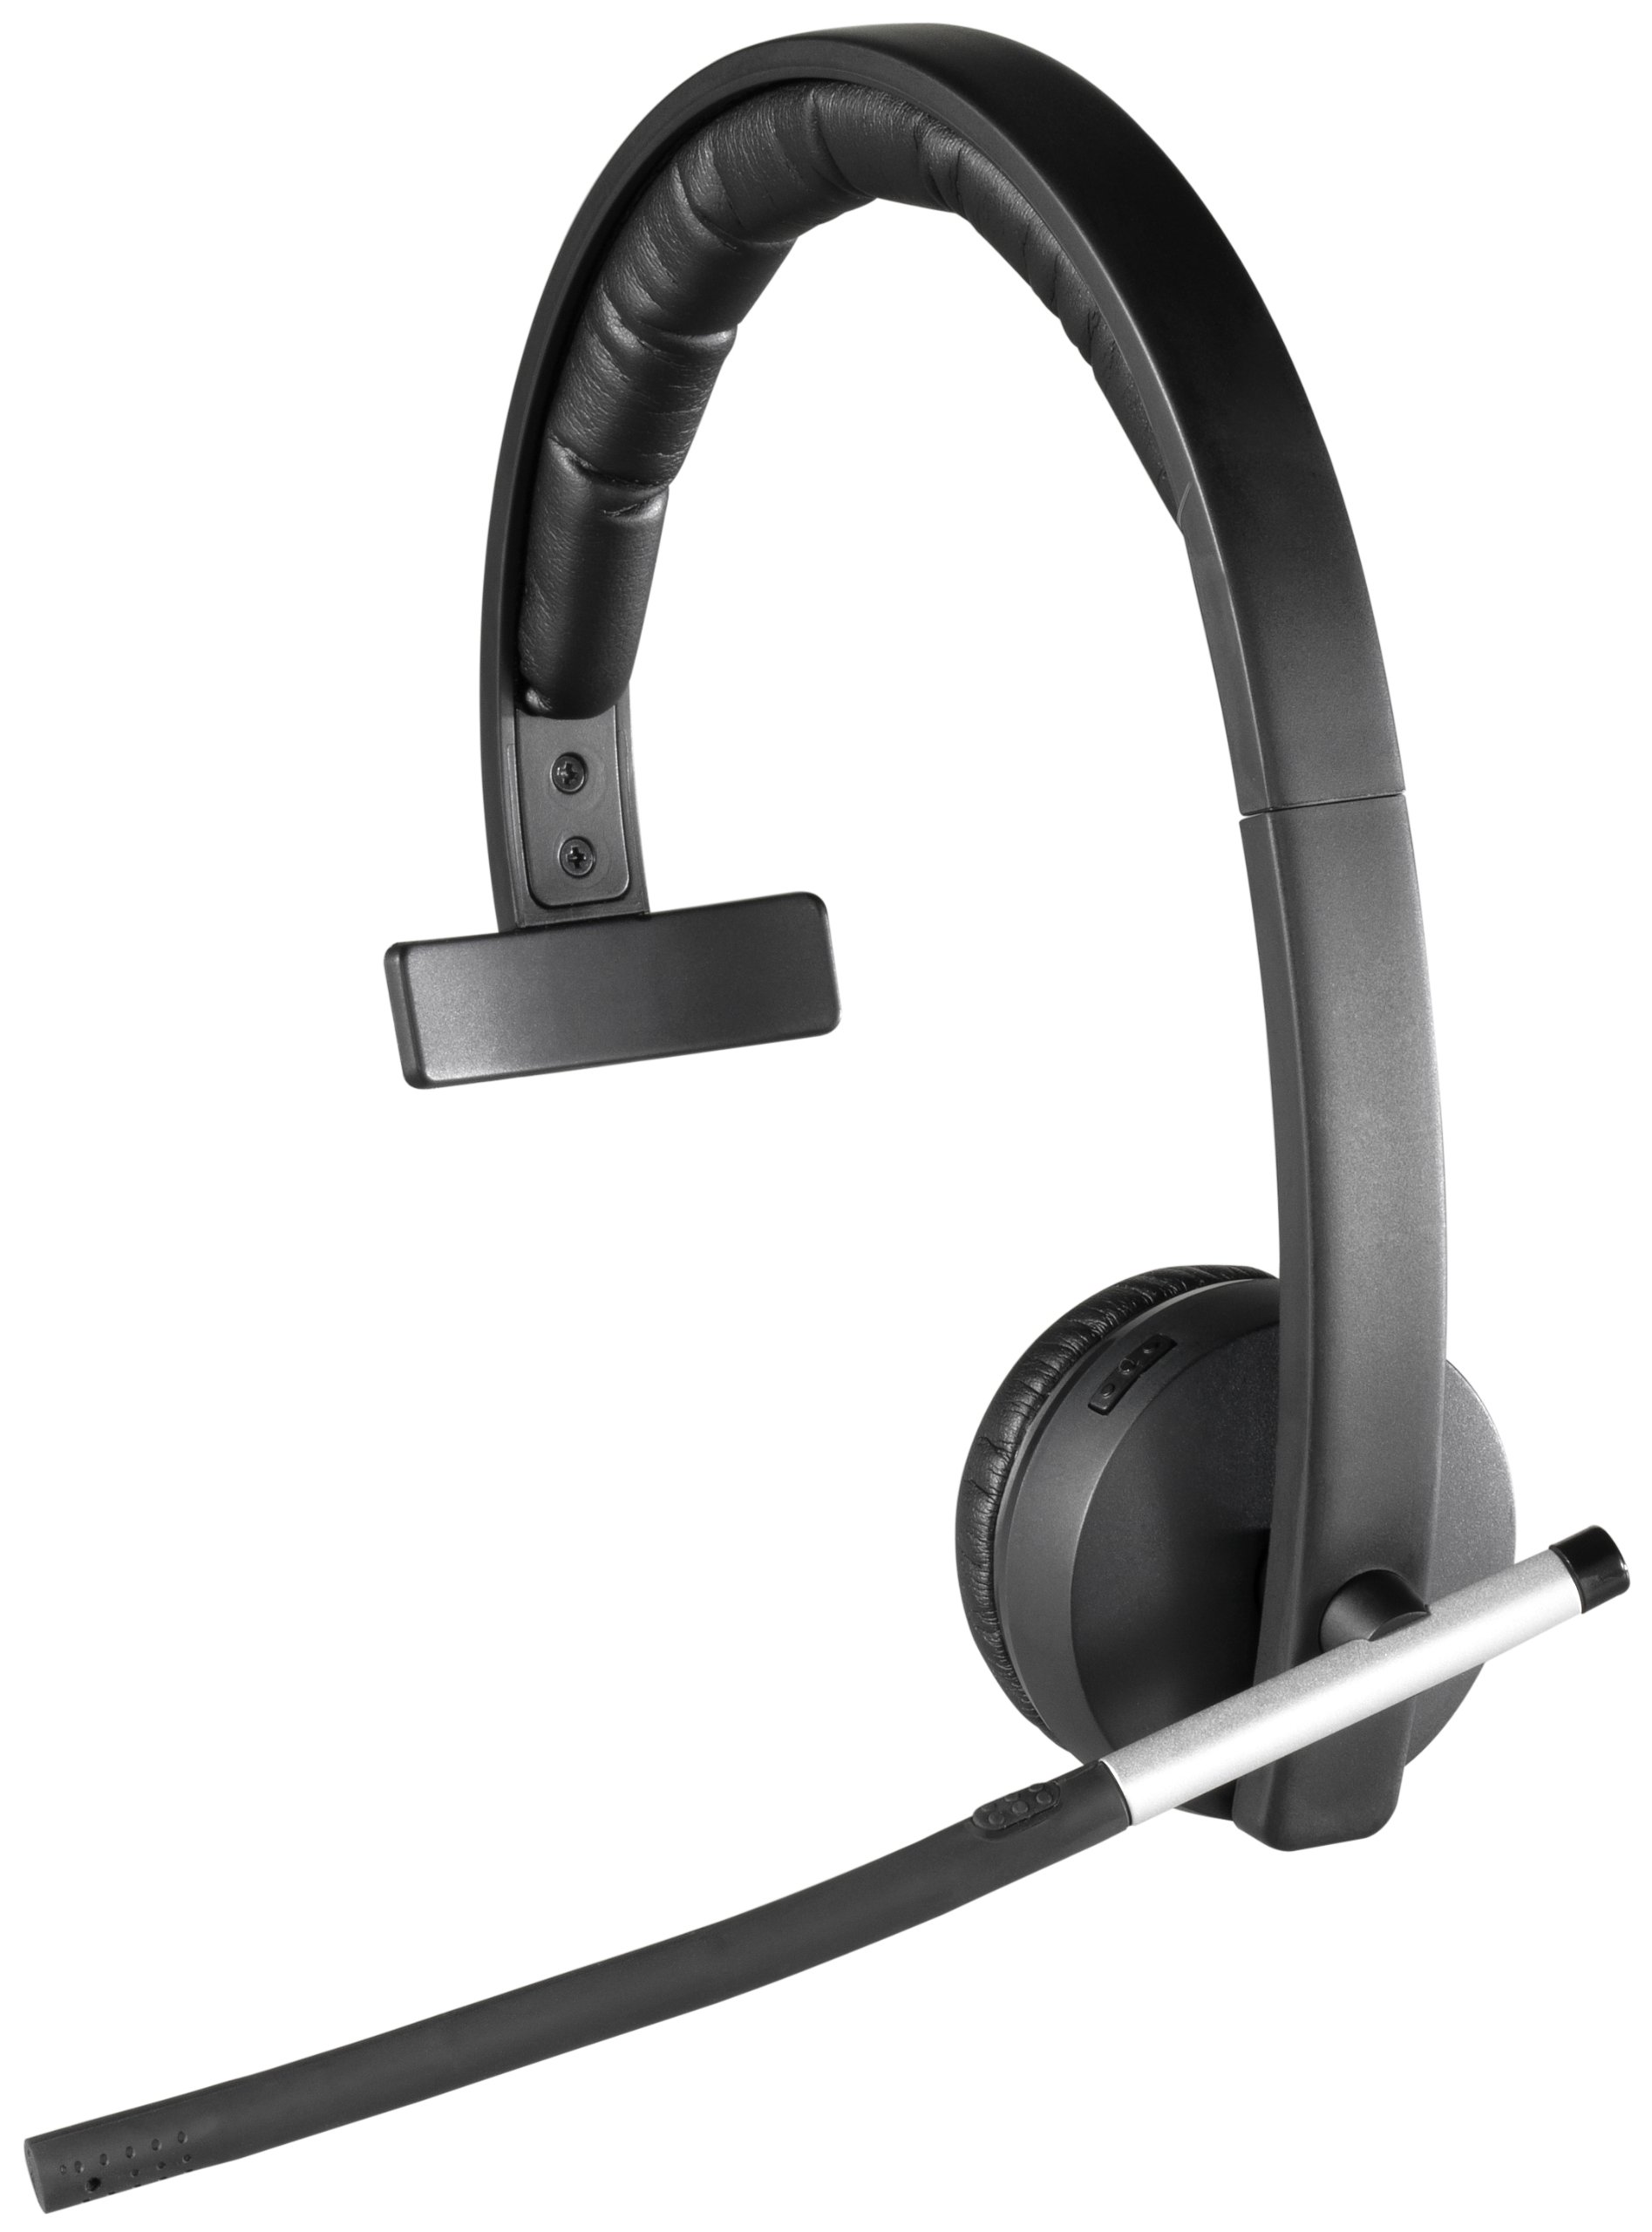 Logitech سماعة رأس لاسلكية H820e أحادية الأذن للأعمال أحادية الأذن - أسود